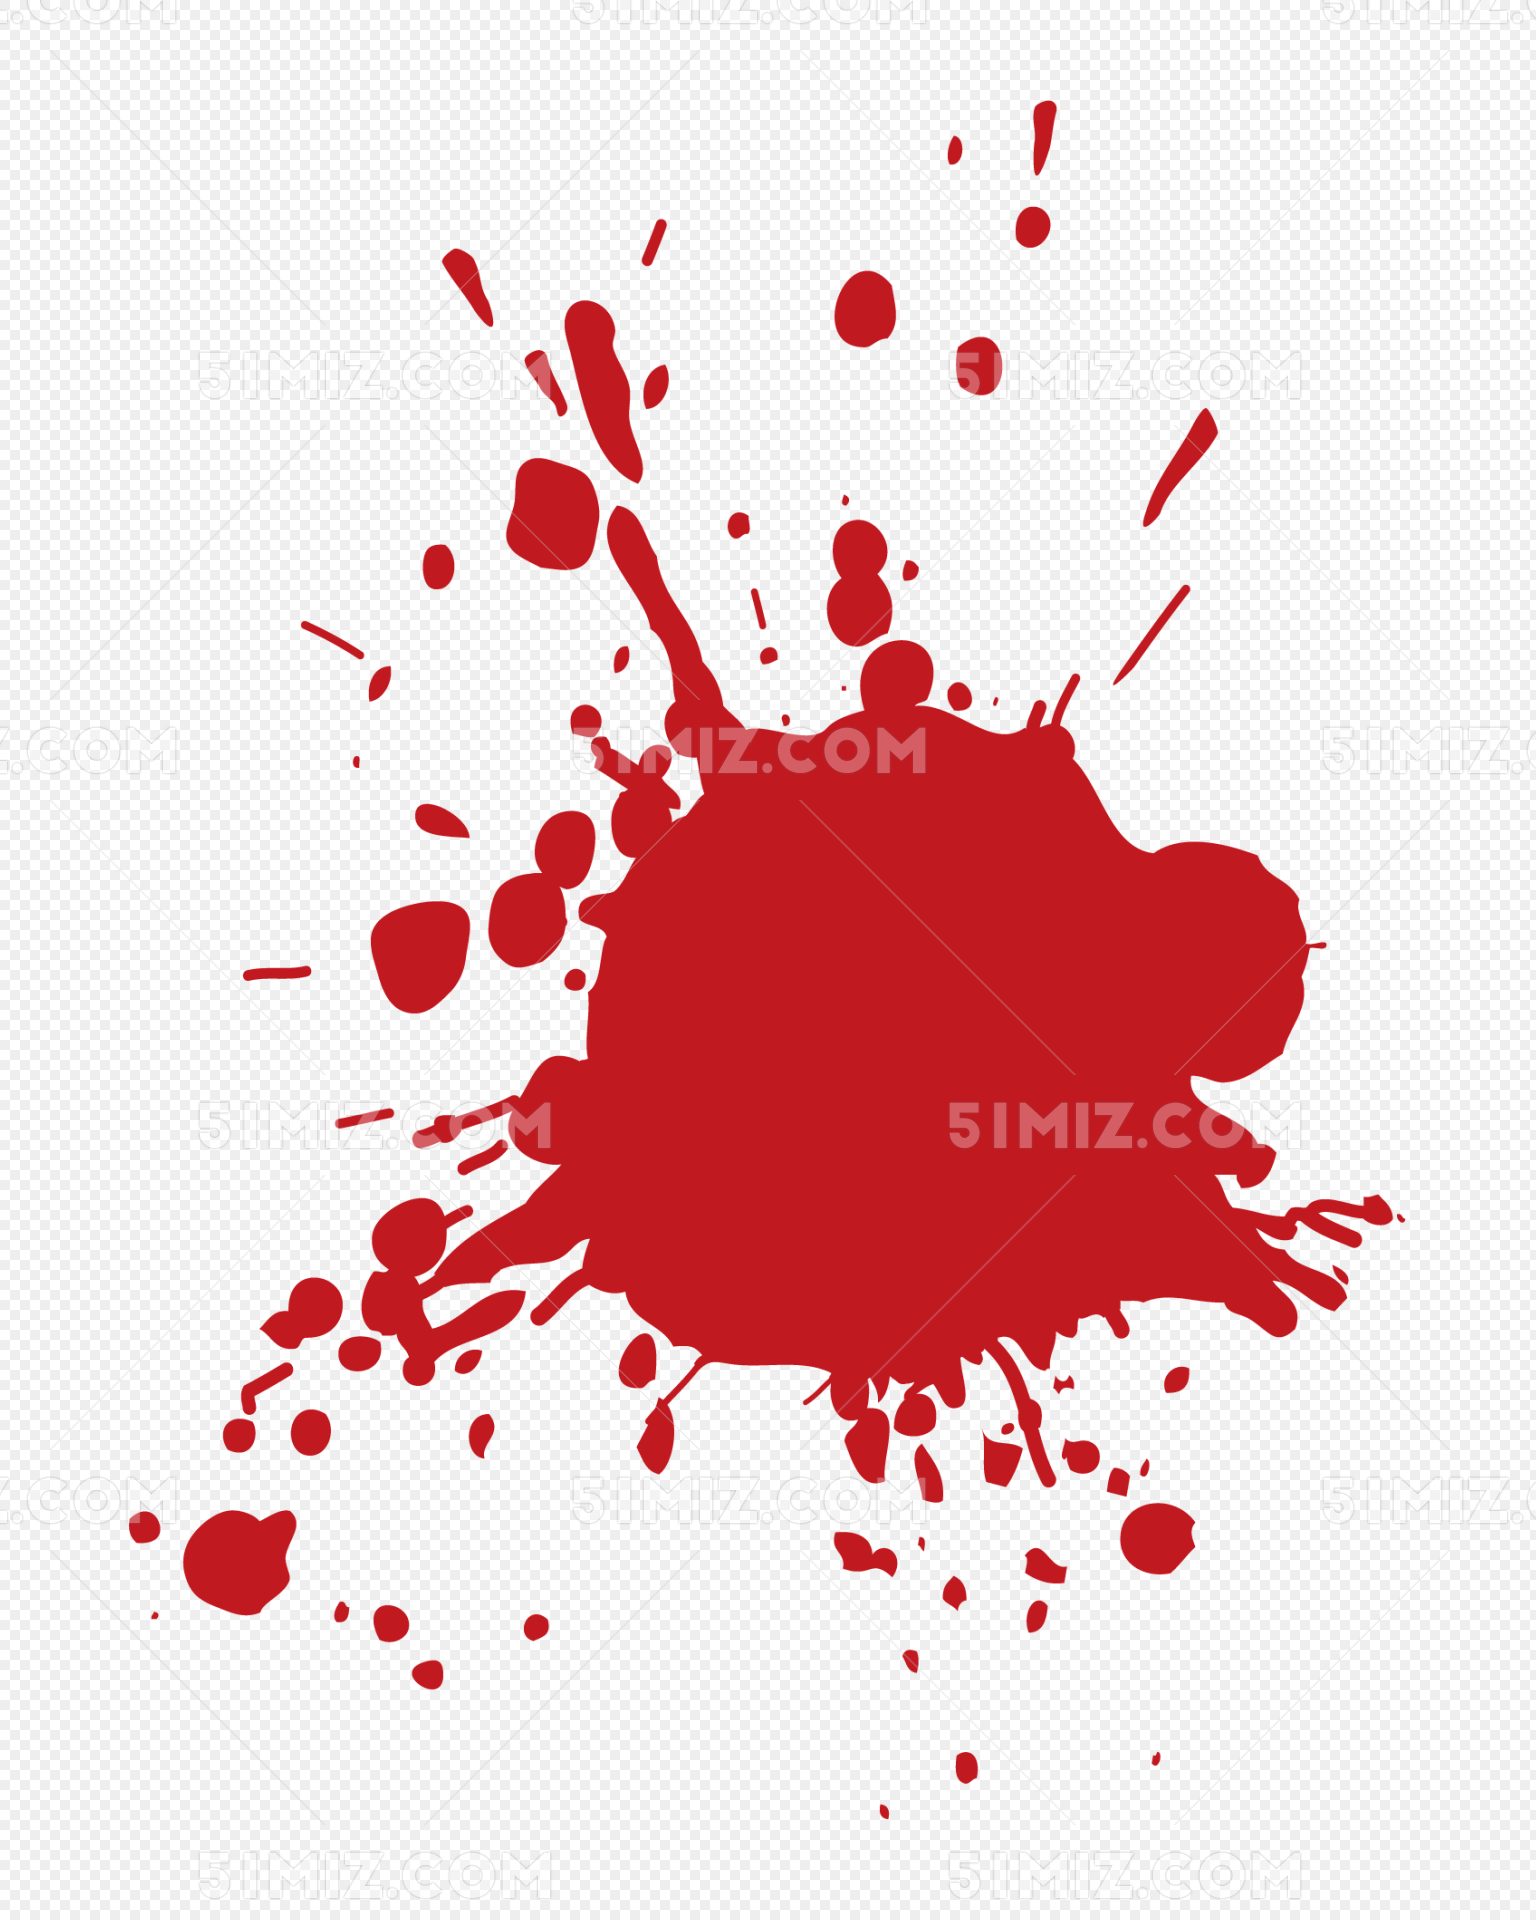 矢量手绘红色血点图片素材免费下载 - 觅知网